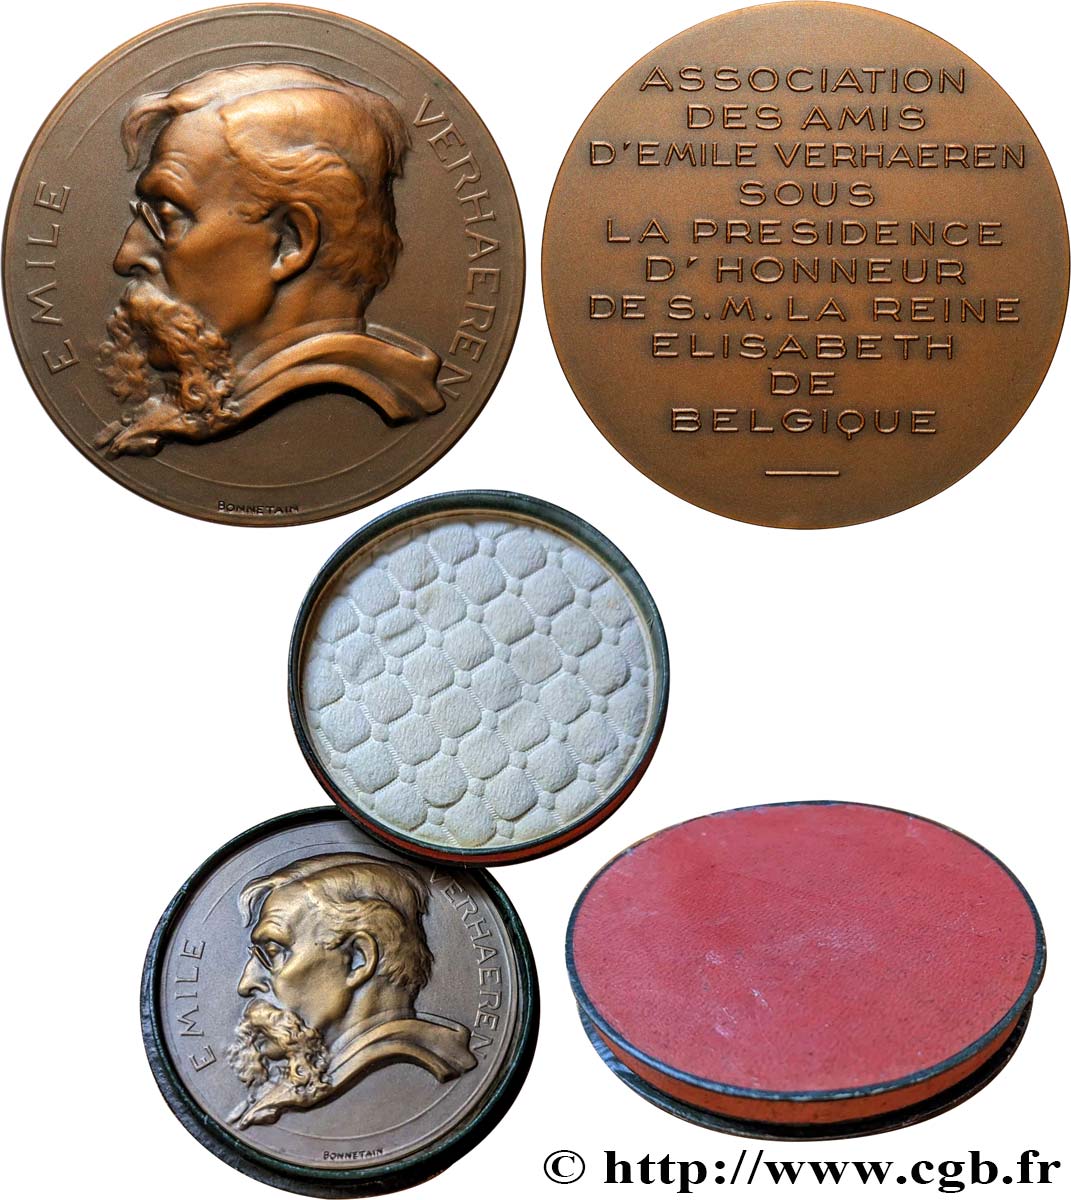 BÉLGICA - REINO DE BÉLGICA - ALBERTO I Médaille, Association des amis d’Emile Verhaeren EBC